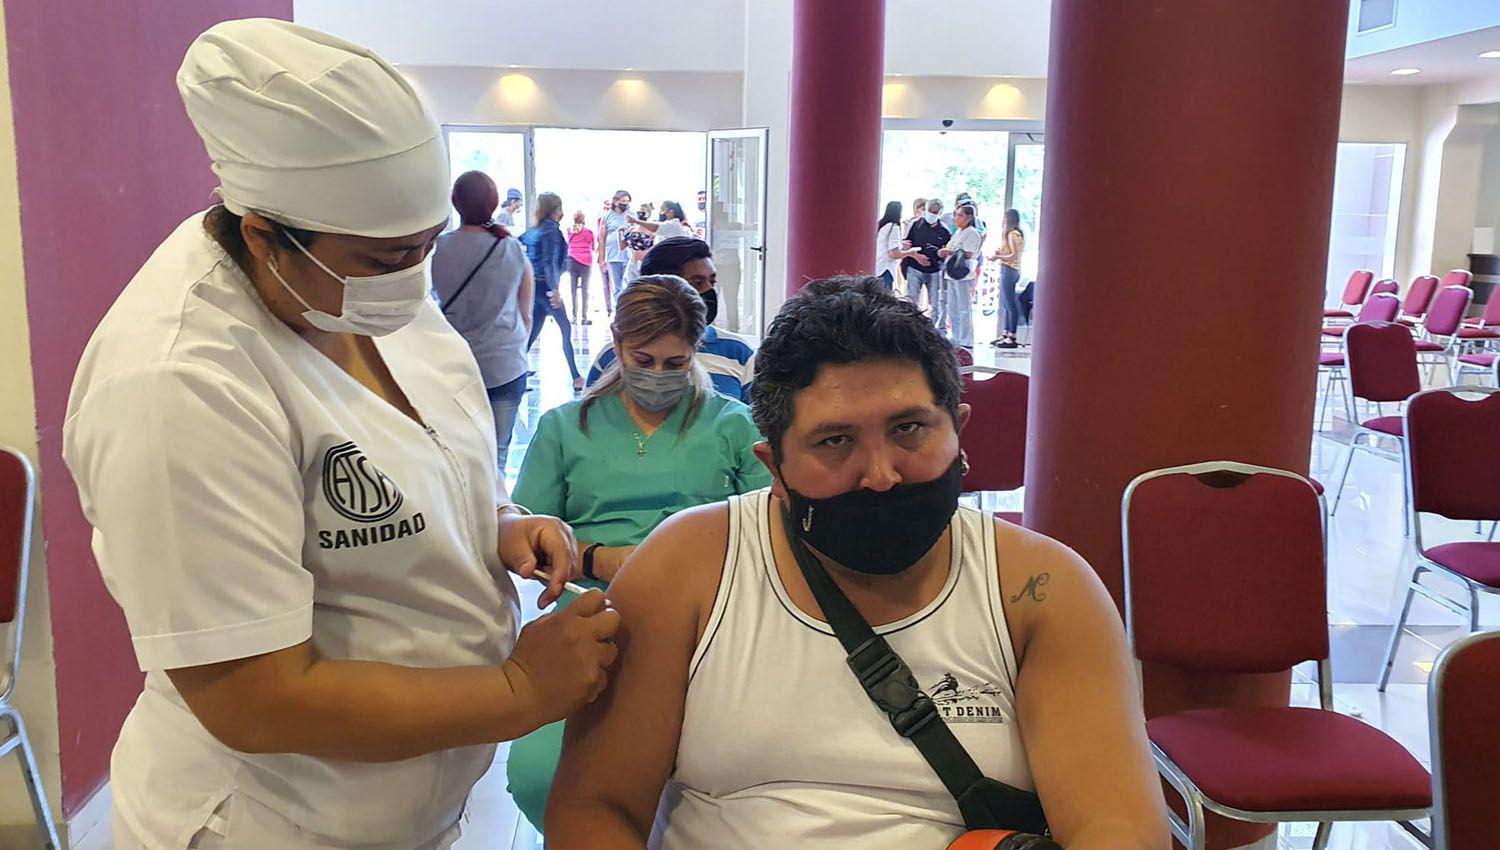 Maacutes de 800 personas se vacunaron contra el Covid-19 en Las Termas